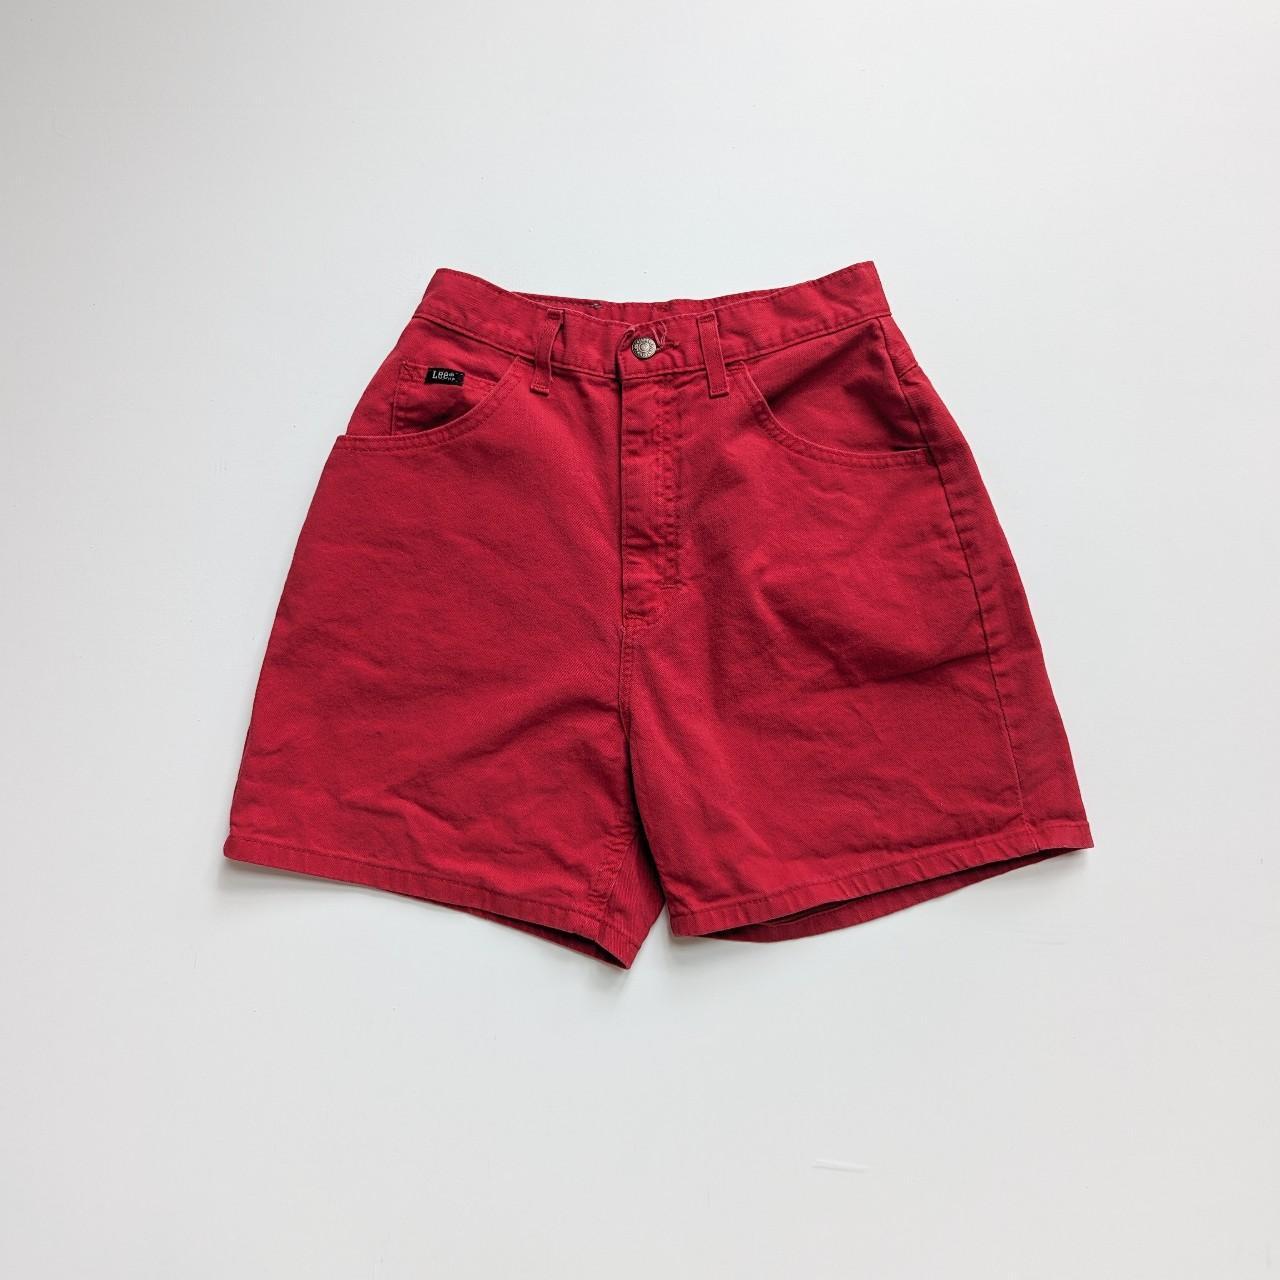 Vintage LEE Red Denim Mom Jean Shorts. Excellent... - Depop